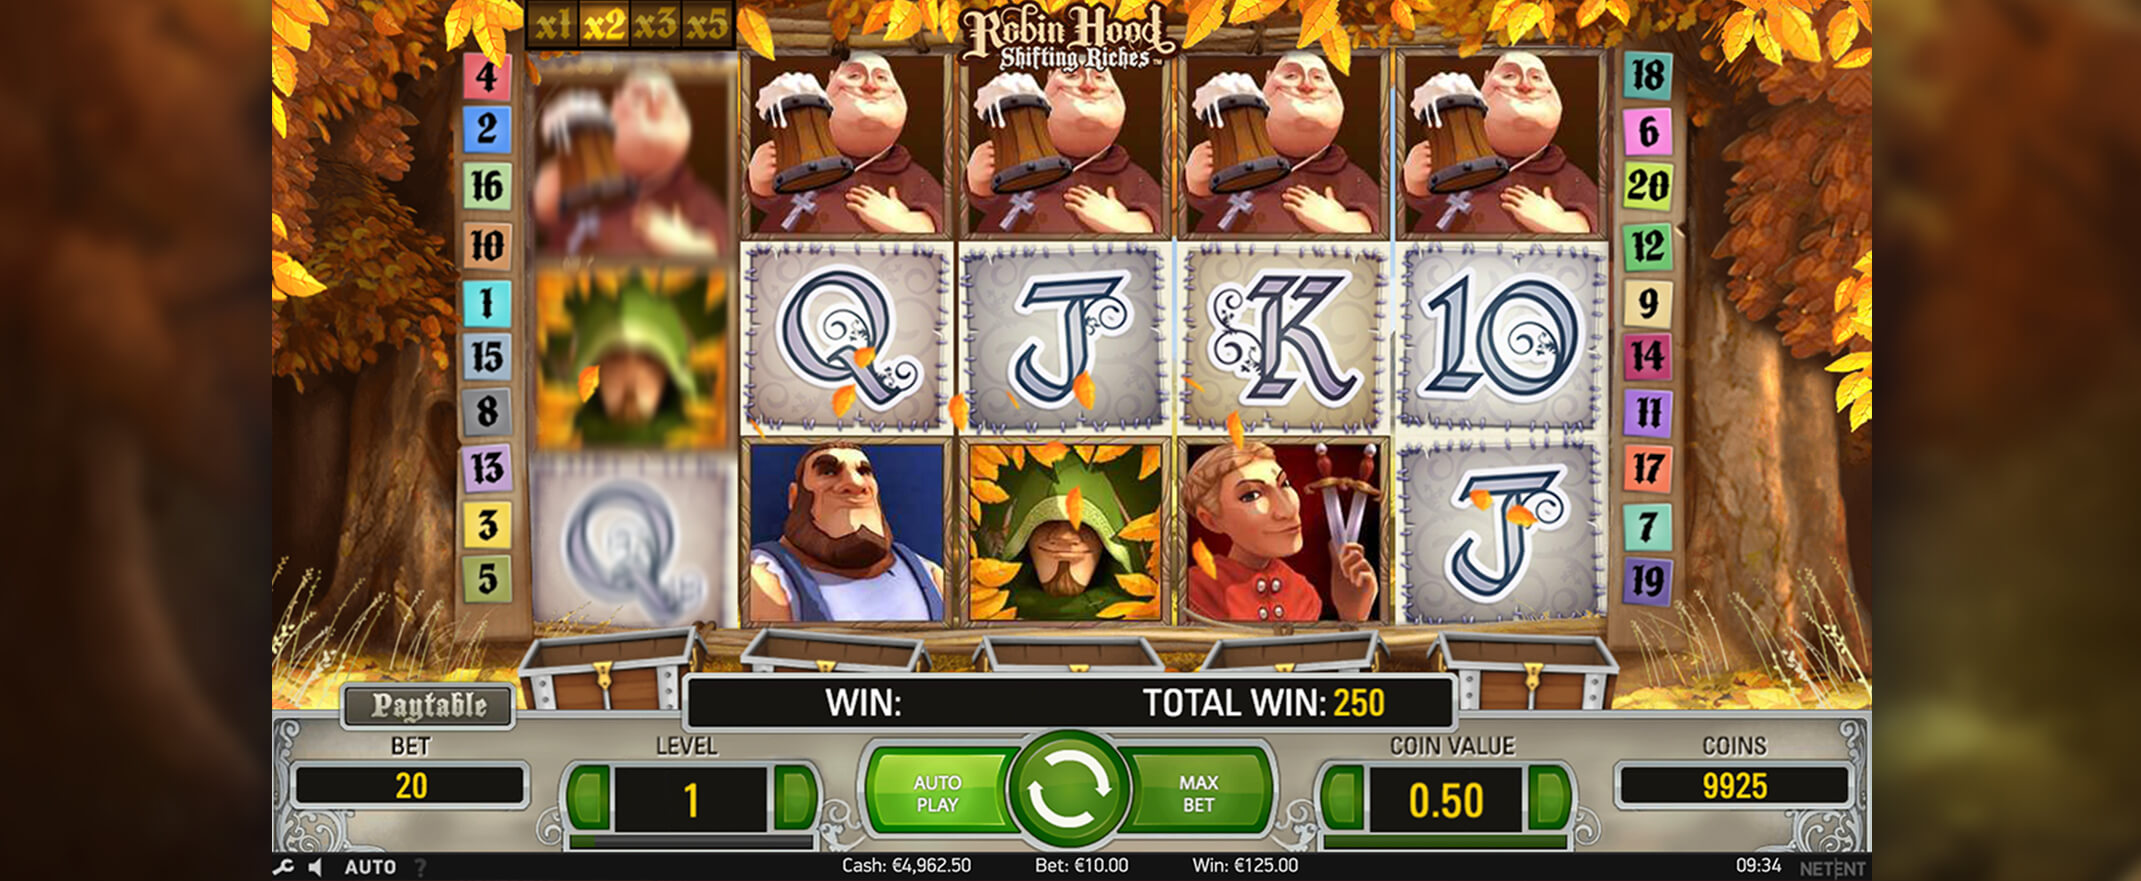 Robin Hood: Shifting Riches Spielautomat spielen